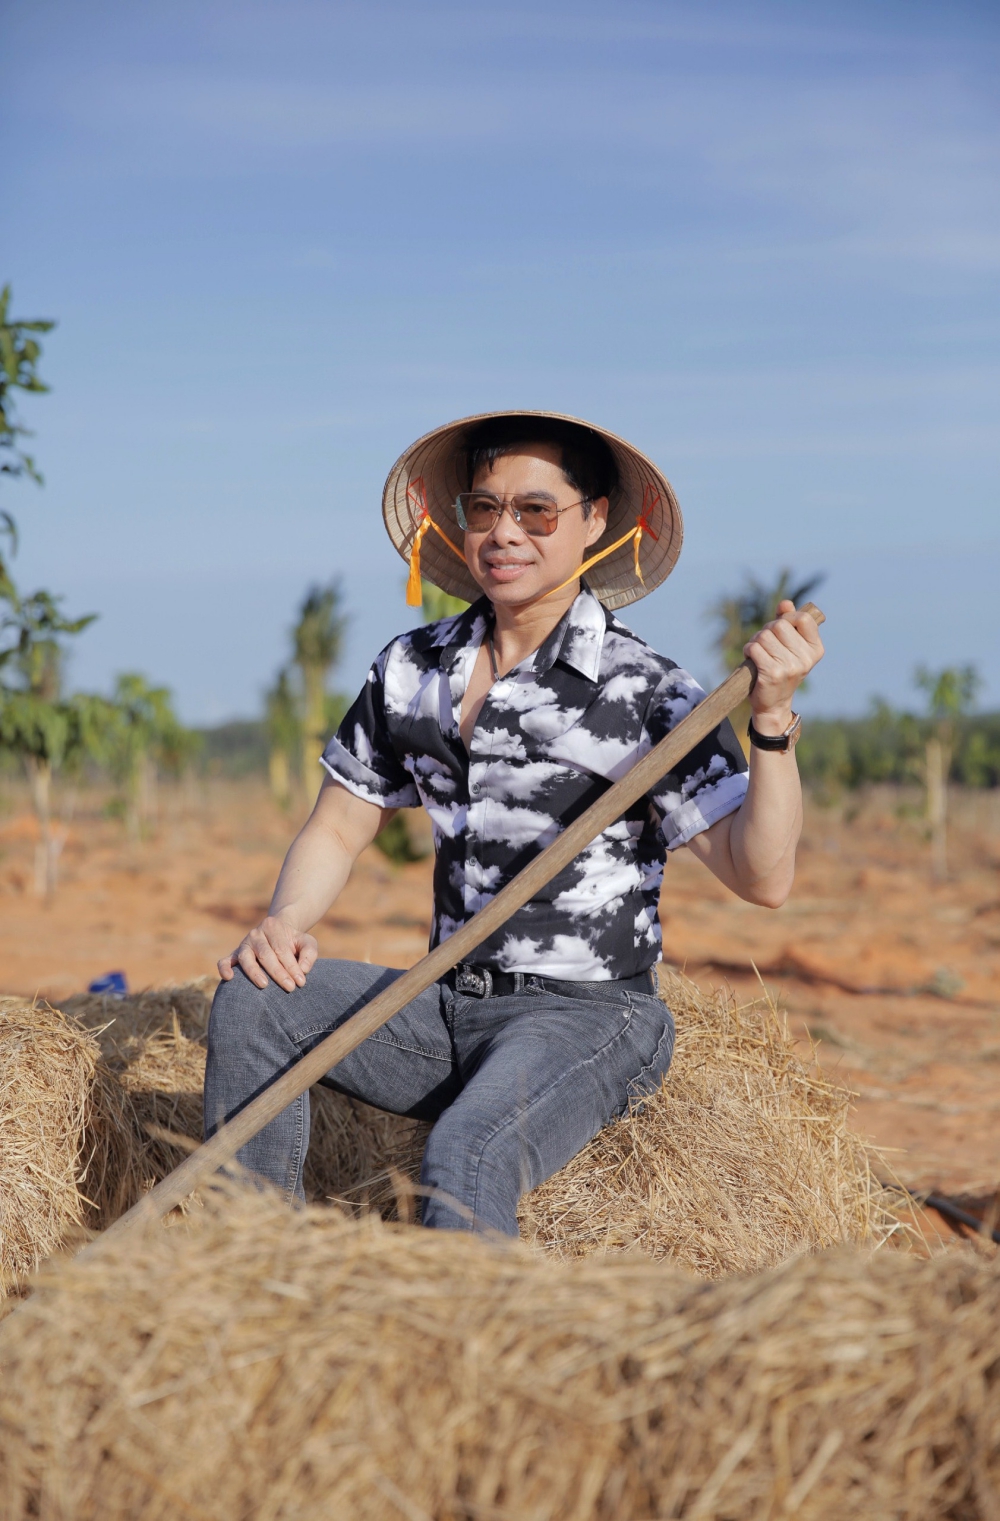 “Nghệ sĩ bình dân” Ngọc Sơn chăm cây, cuốc đất, nuôi cá, trồng rau tại mảnh đất rộng 50 héc ta